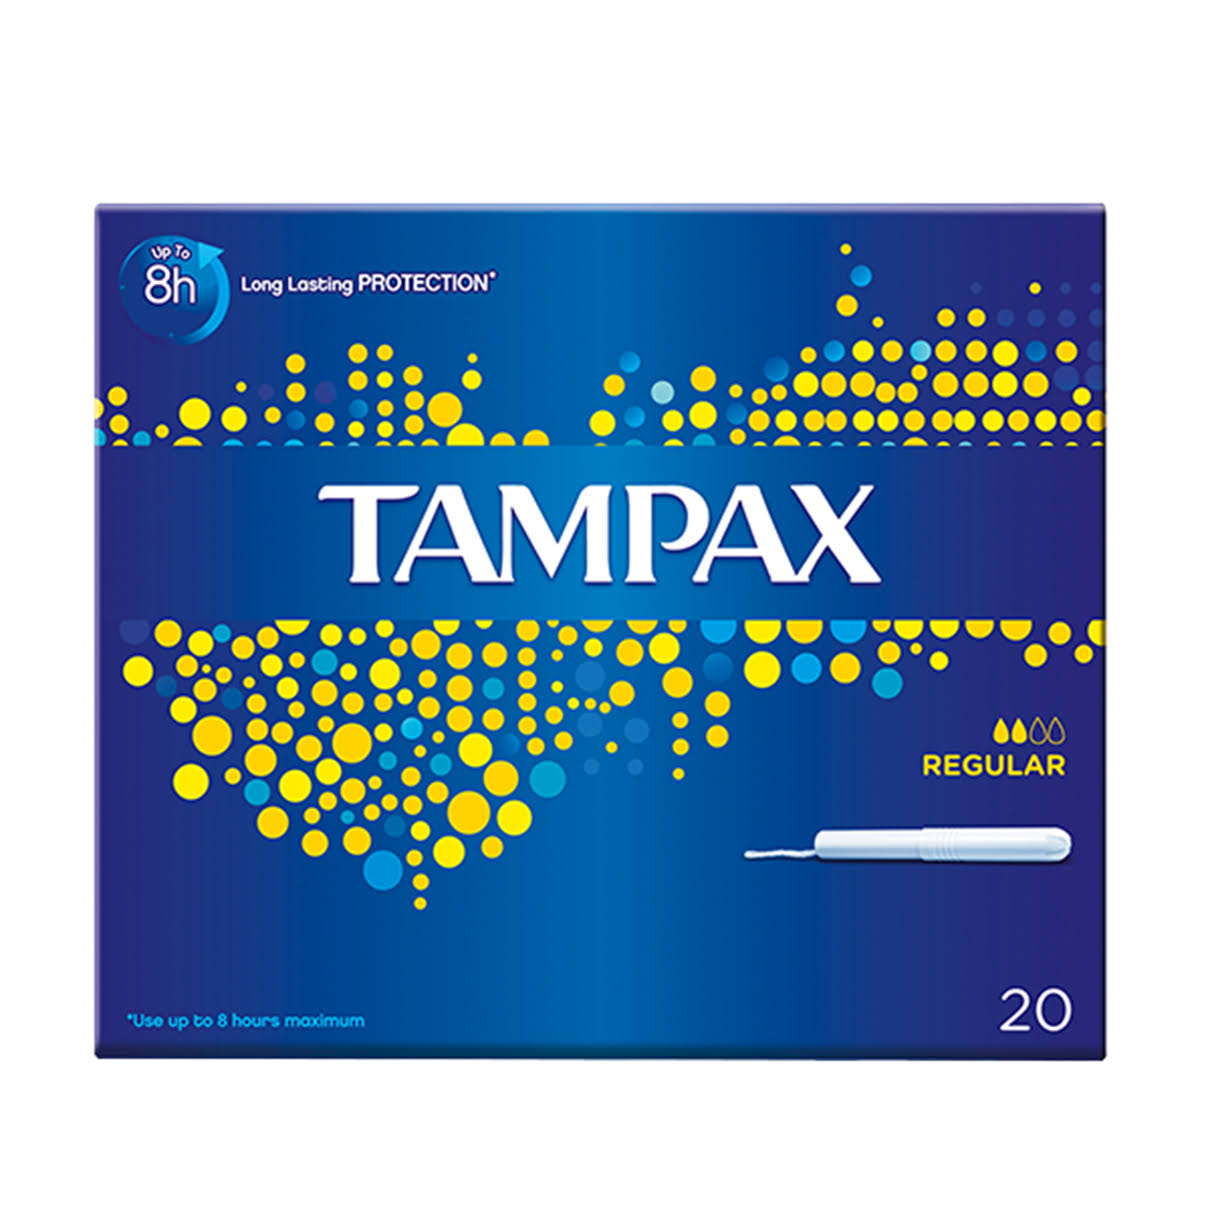 Tampax Super Tampons Applicator Cardboard - 20pk